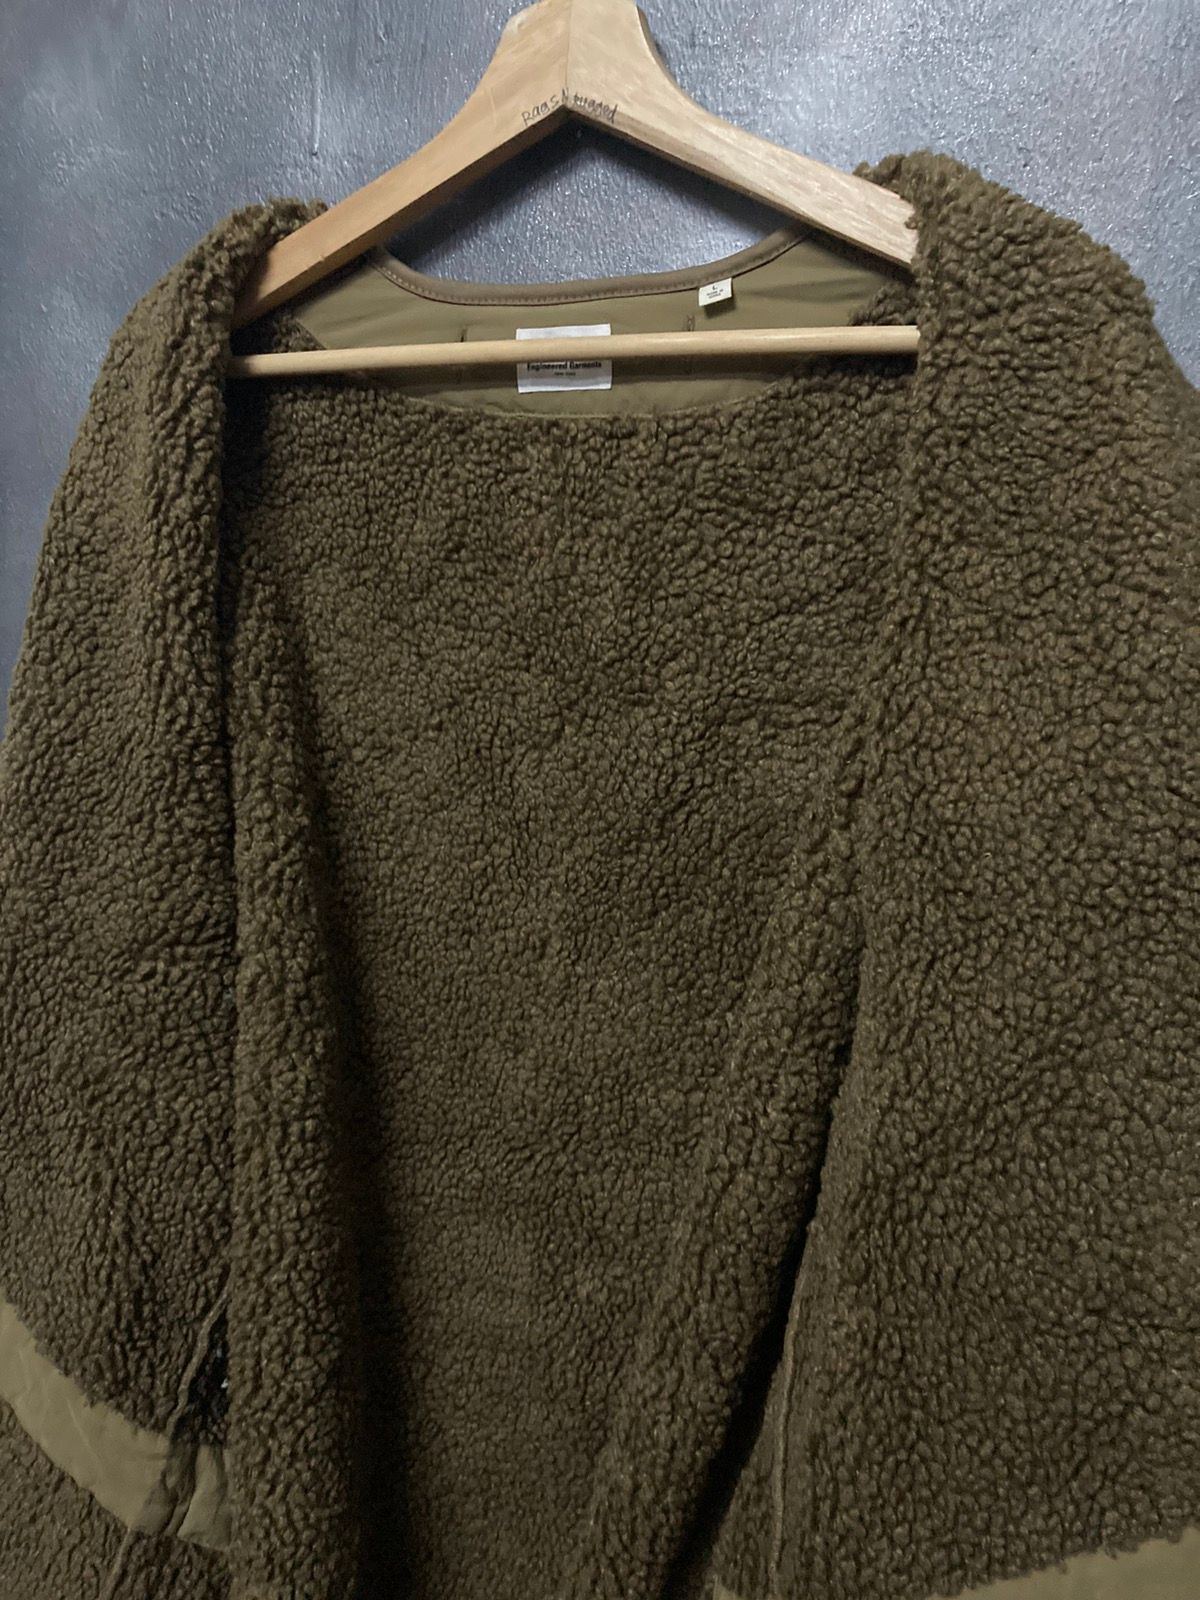 Engineered Garments Uniqlo Fleece Jacket - 13